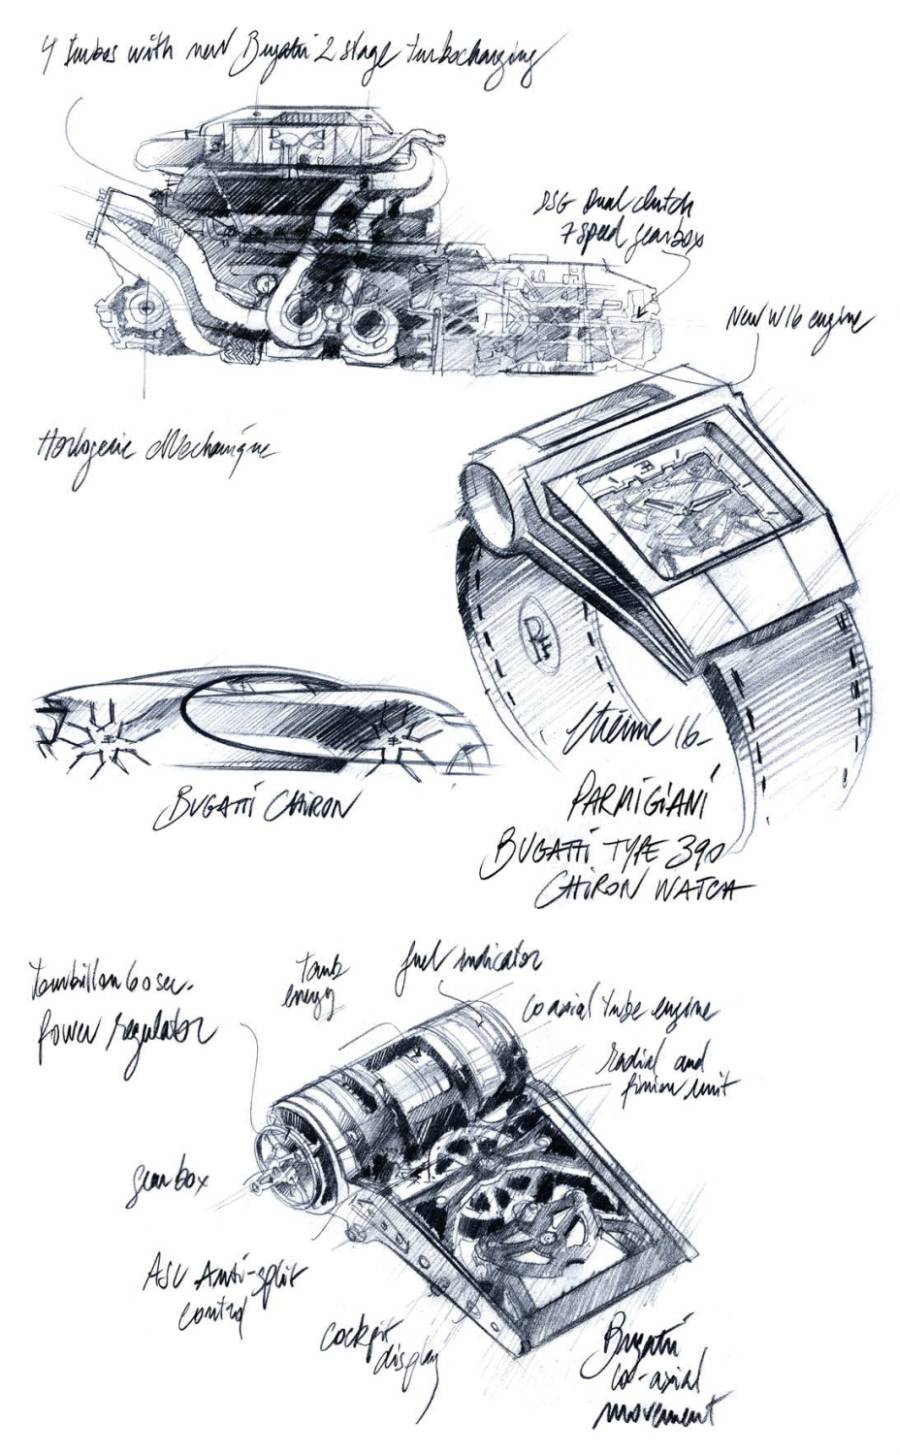 PF Bugatti Type 390 Concept Watch : un bloc moteur au poignet